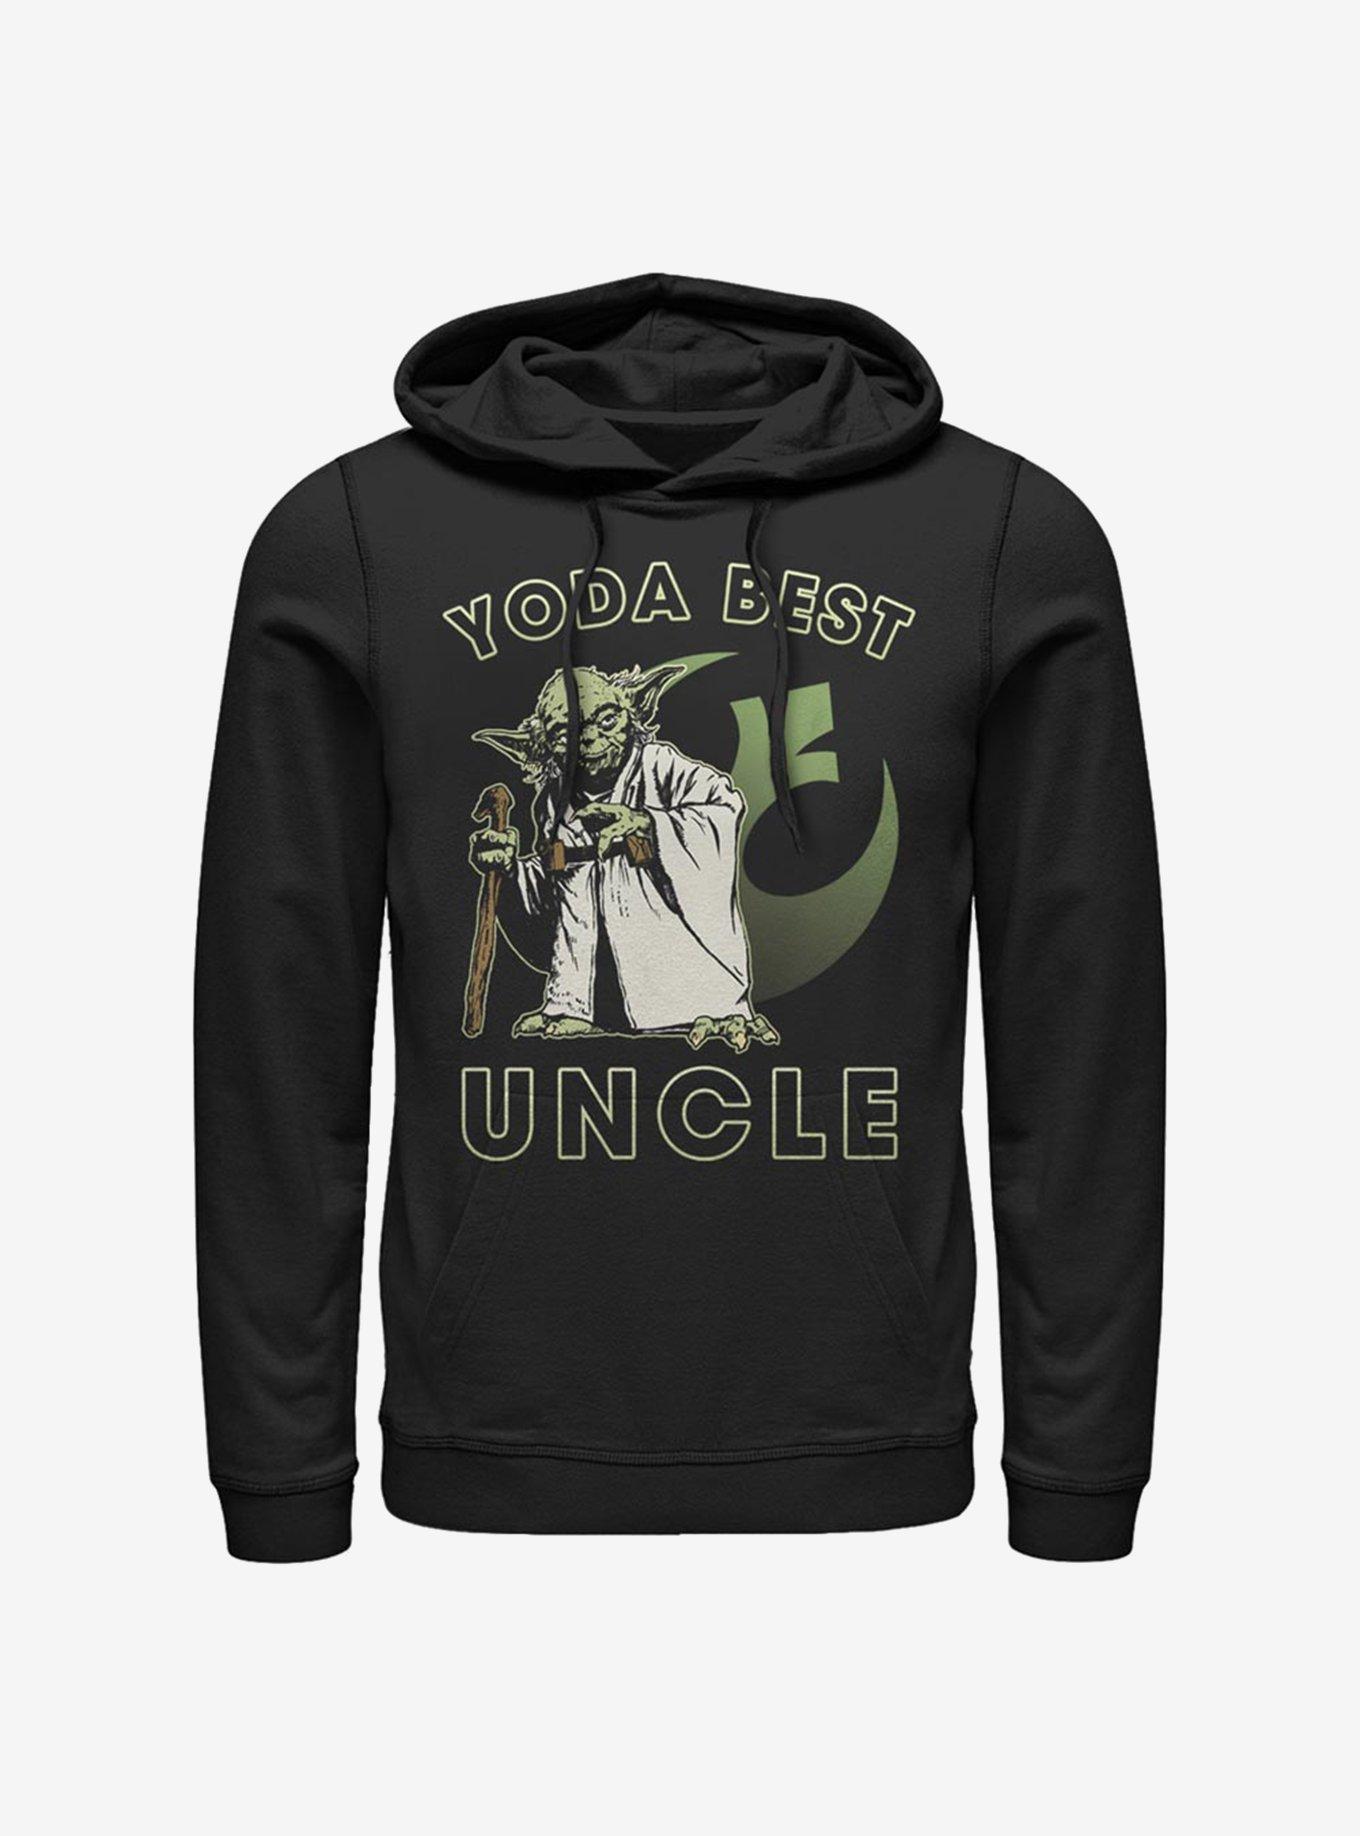 Star Wars Yoda Best Uncle Hoodie, BLACK, hi-res